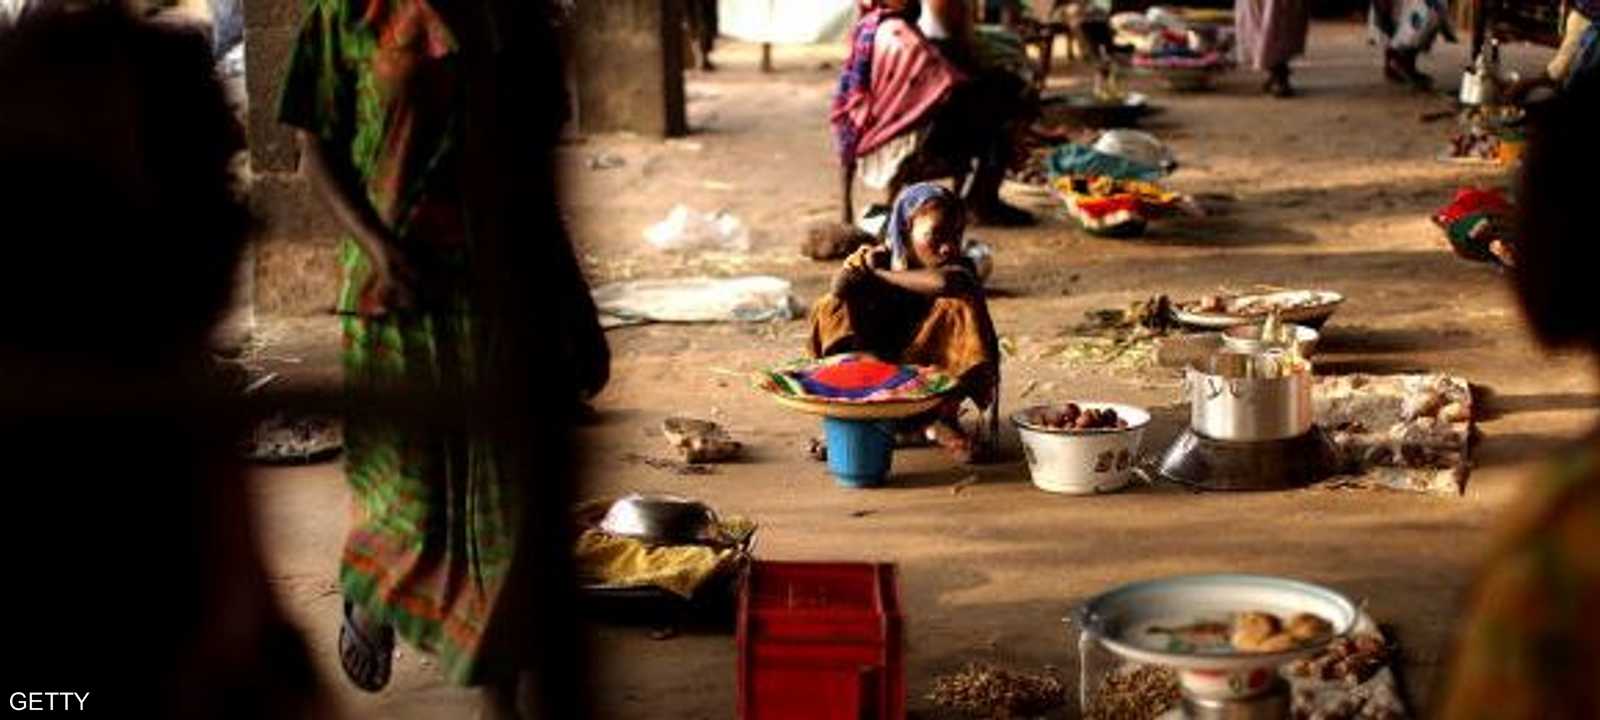 85% من الأفارقة يعيشون بأقل من 5.50 دولارا يوميا